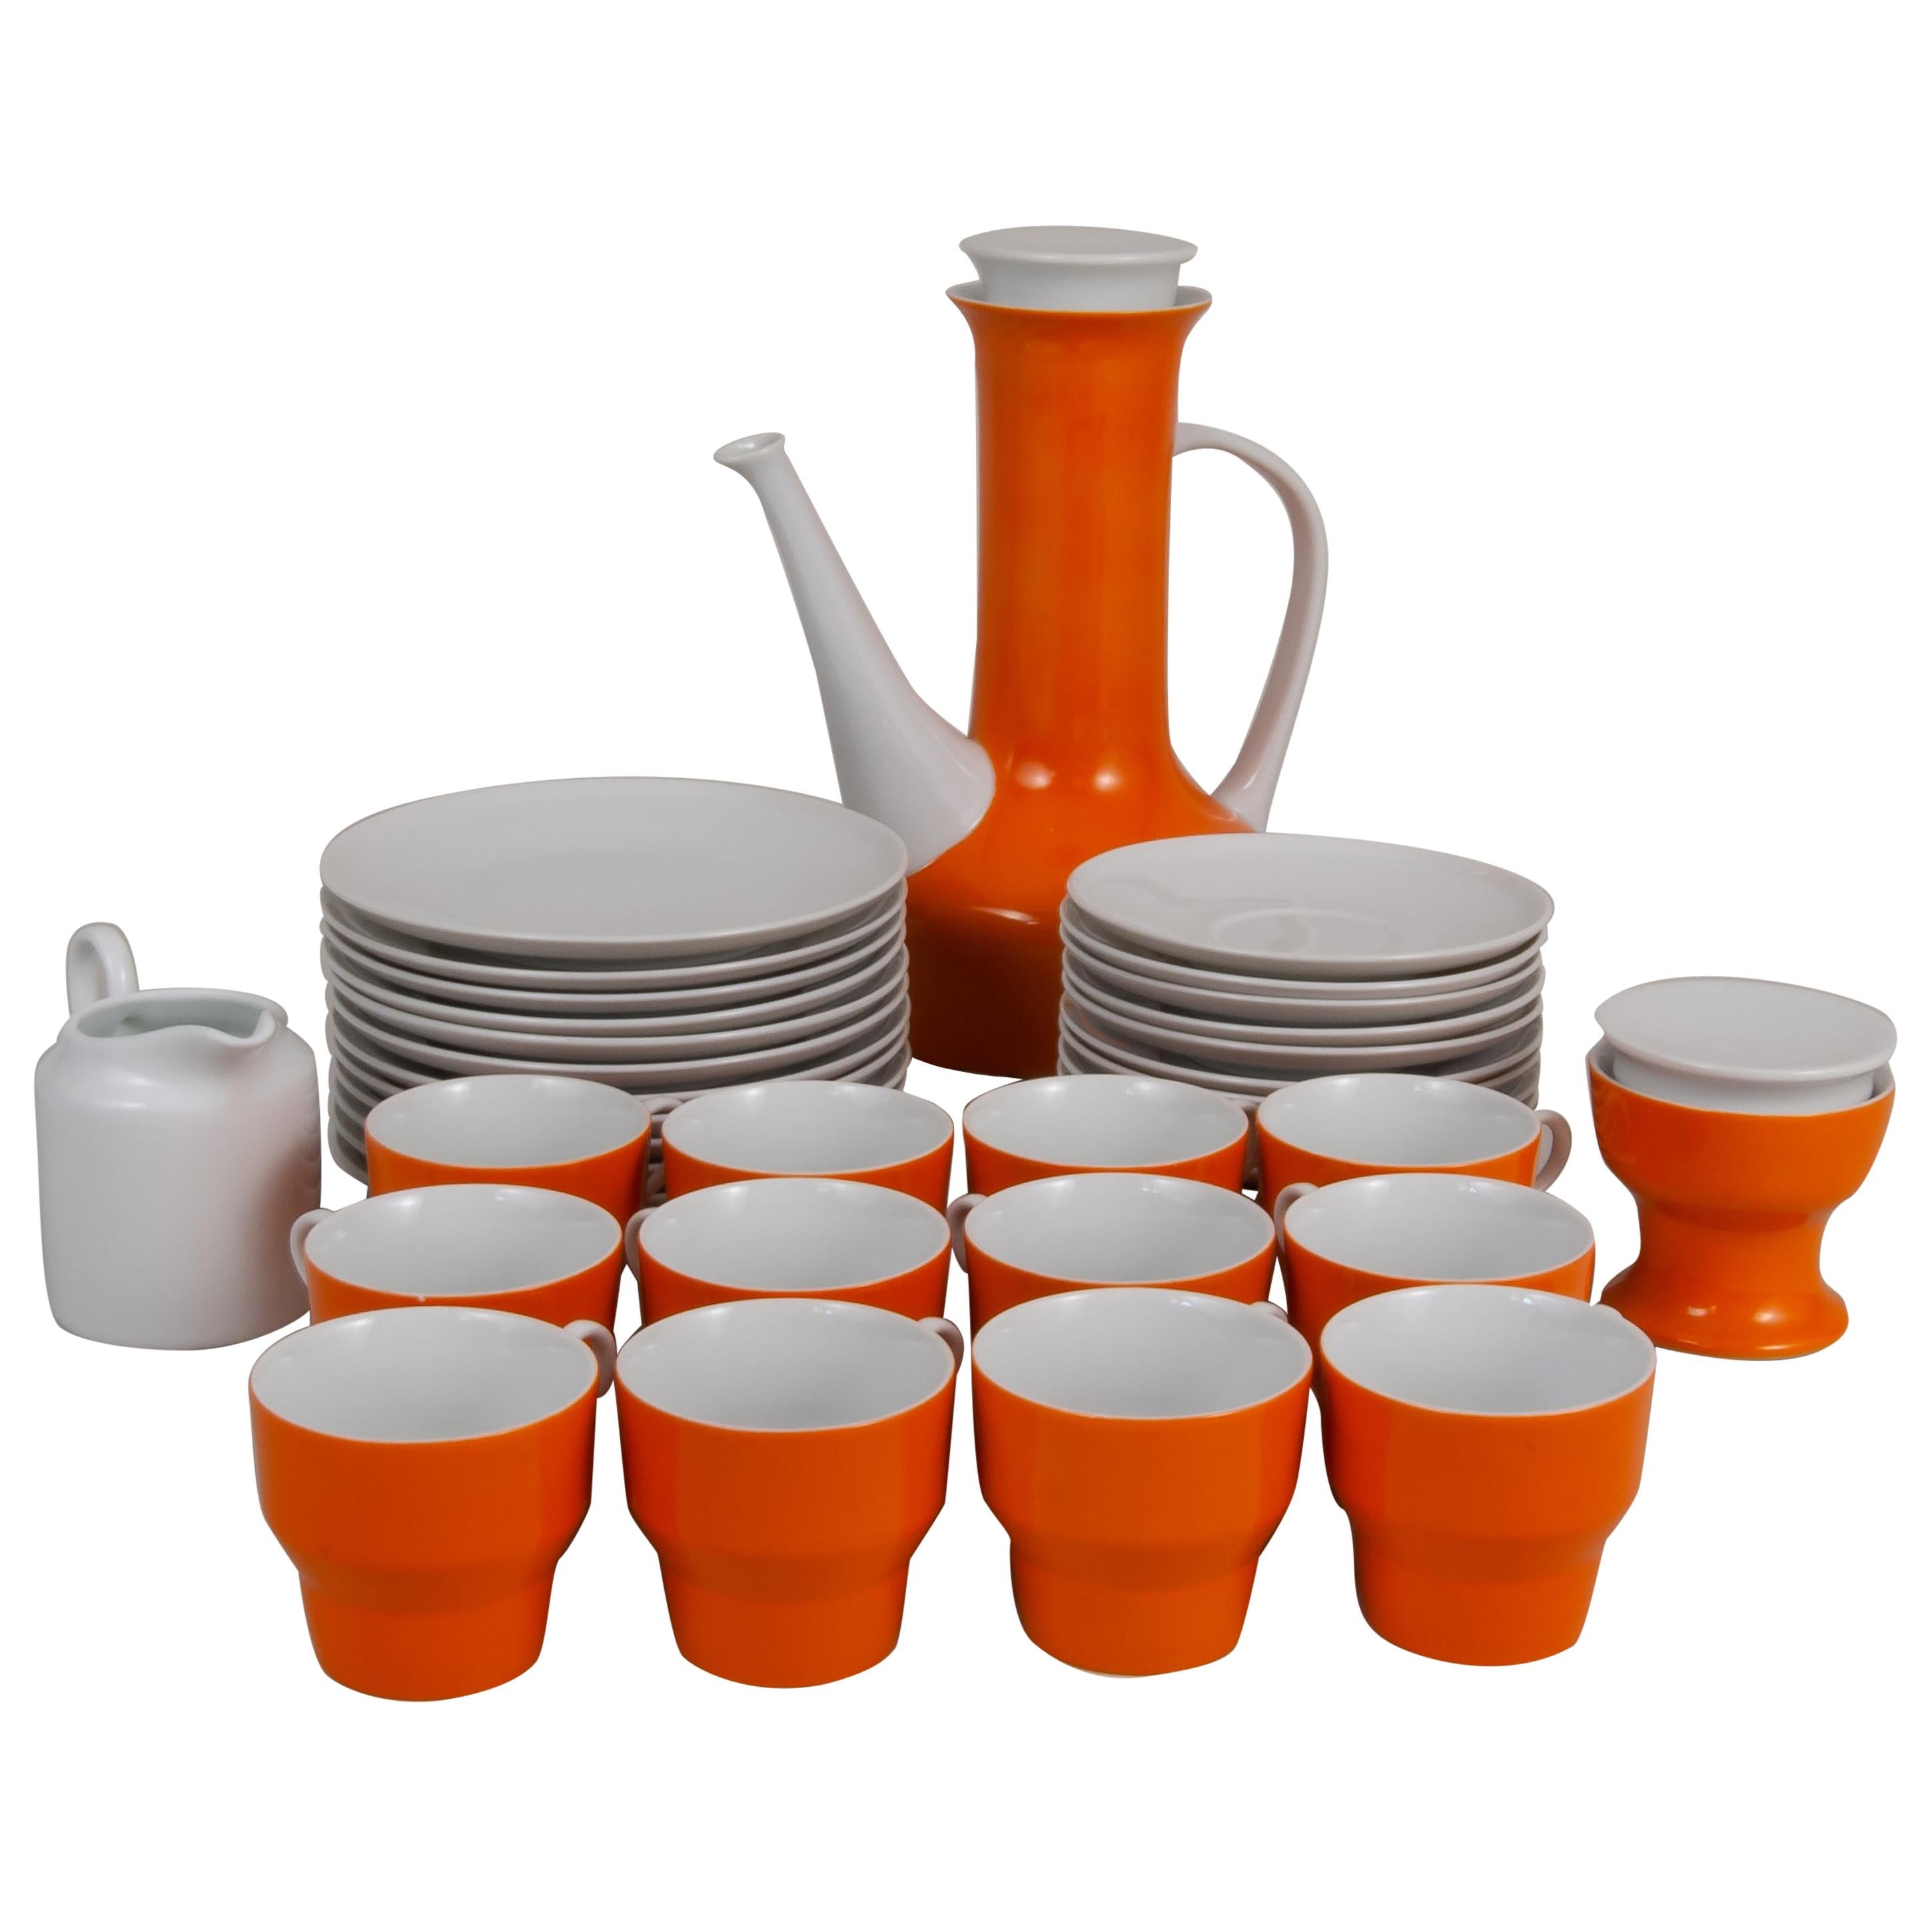 Paul McCobb for Contempi, Japon, service à café en céramique de 38 pièces en orange et blanc